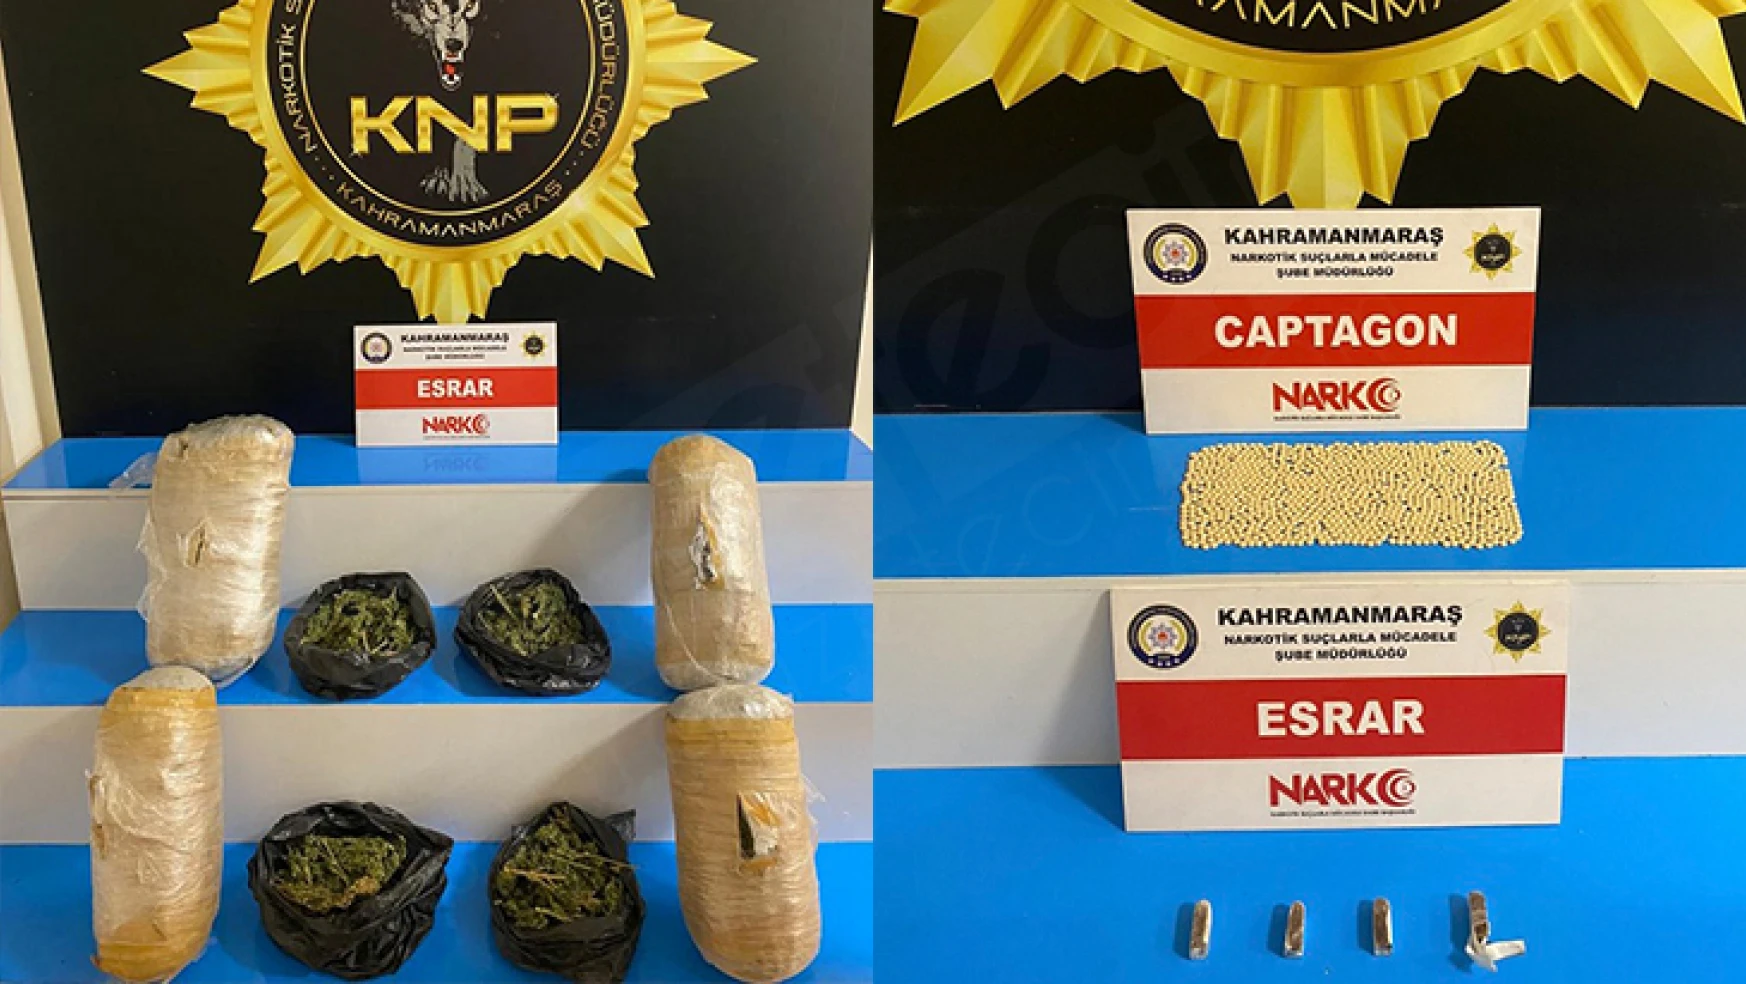 Kahramanmaraş'ta çok miktarda uyuşturucu ele geçirildi: 2 Kişi tutuklandı